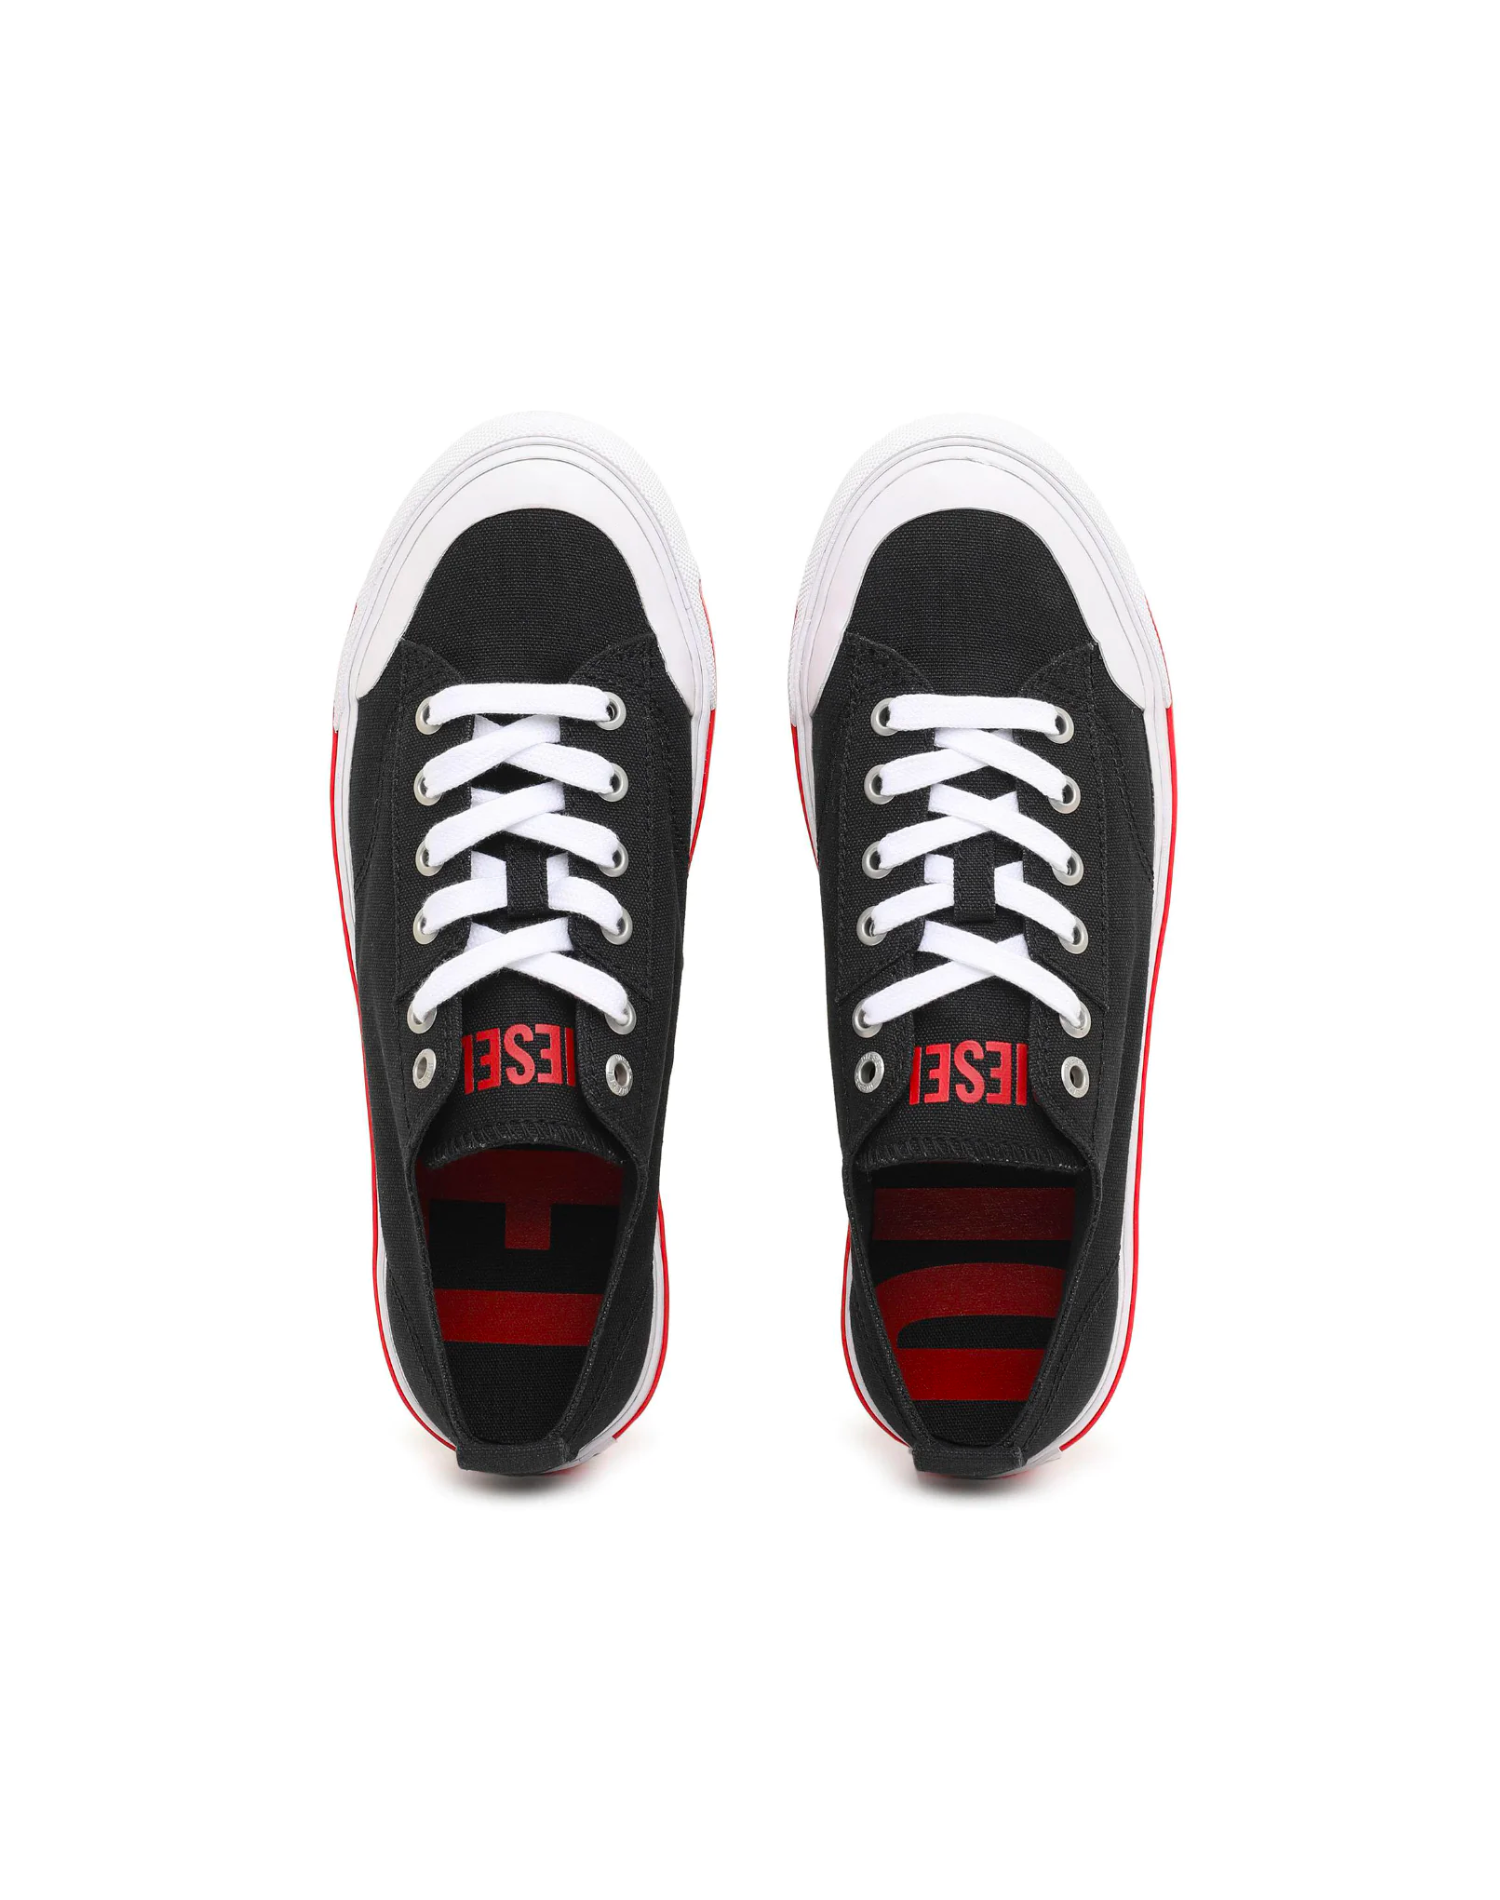 Diesel - S-Athos Low W Sneakers - Black/White